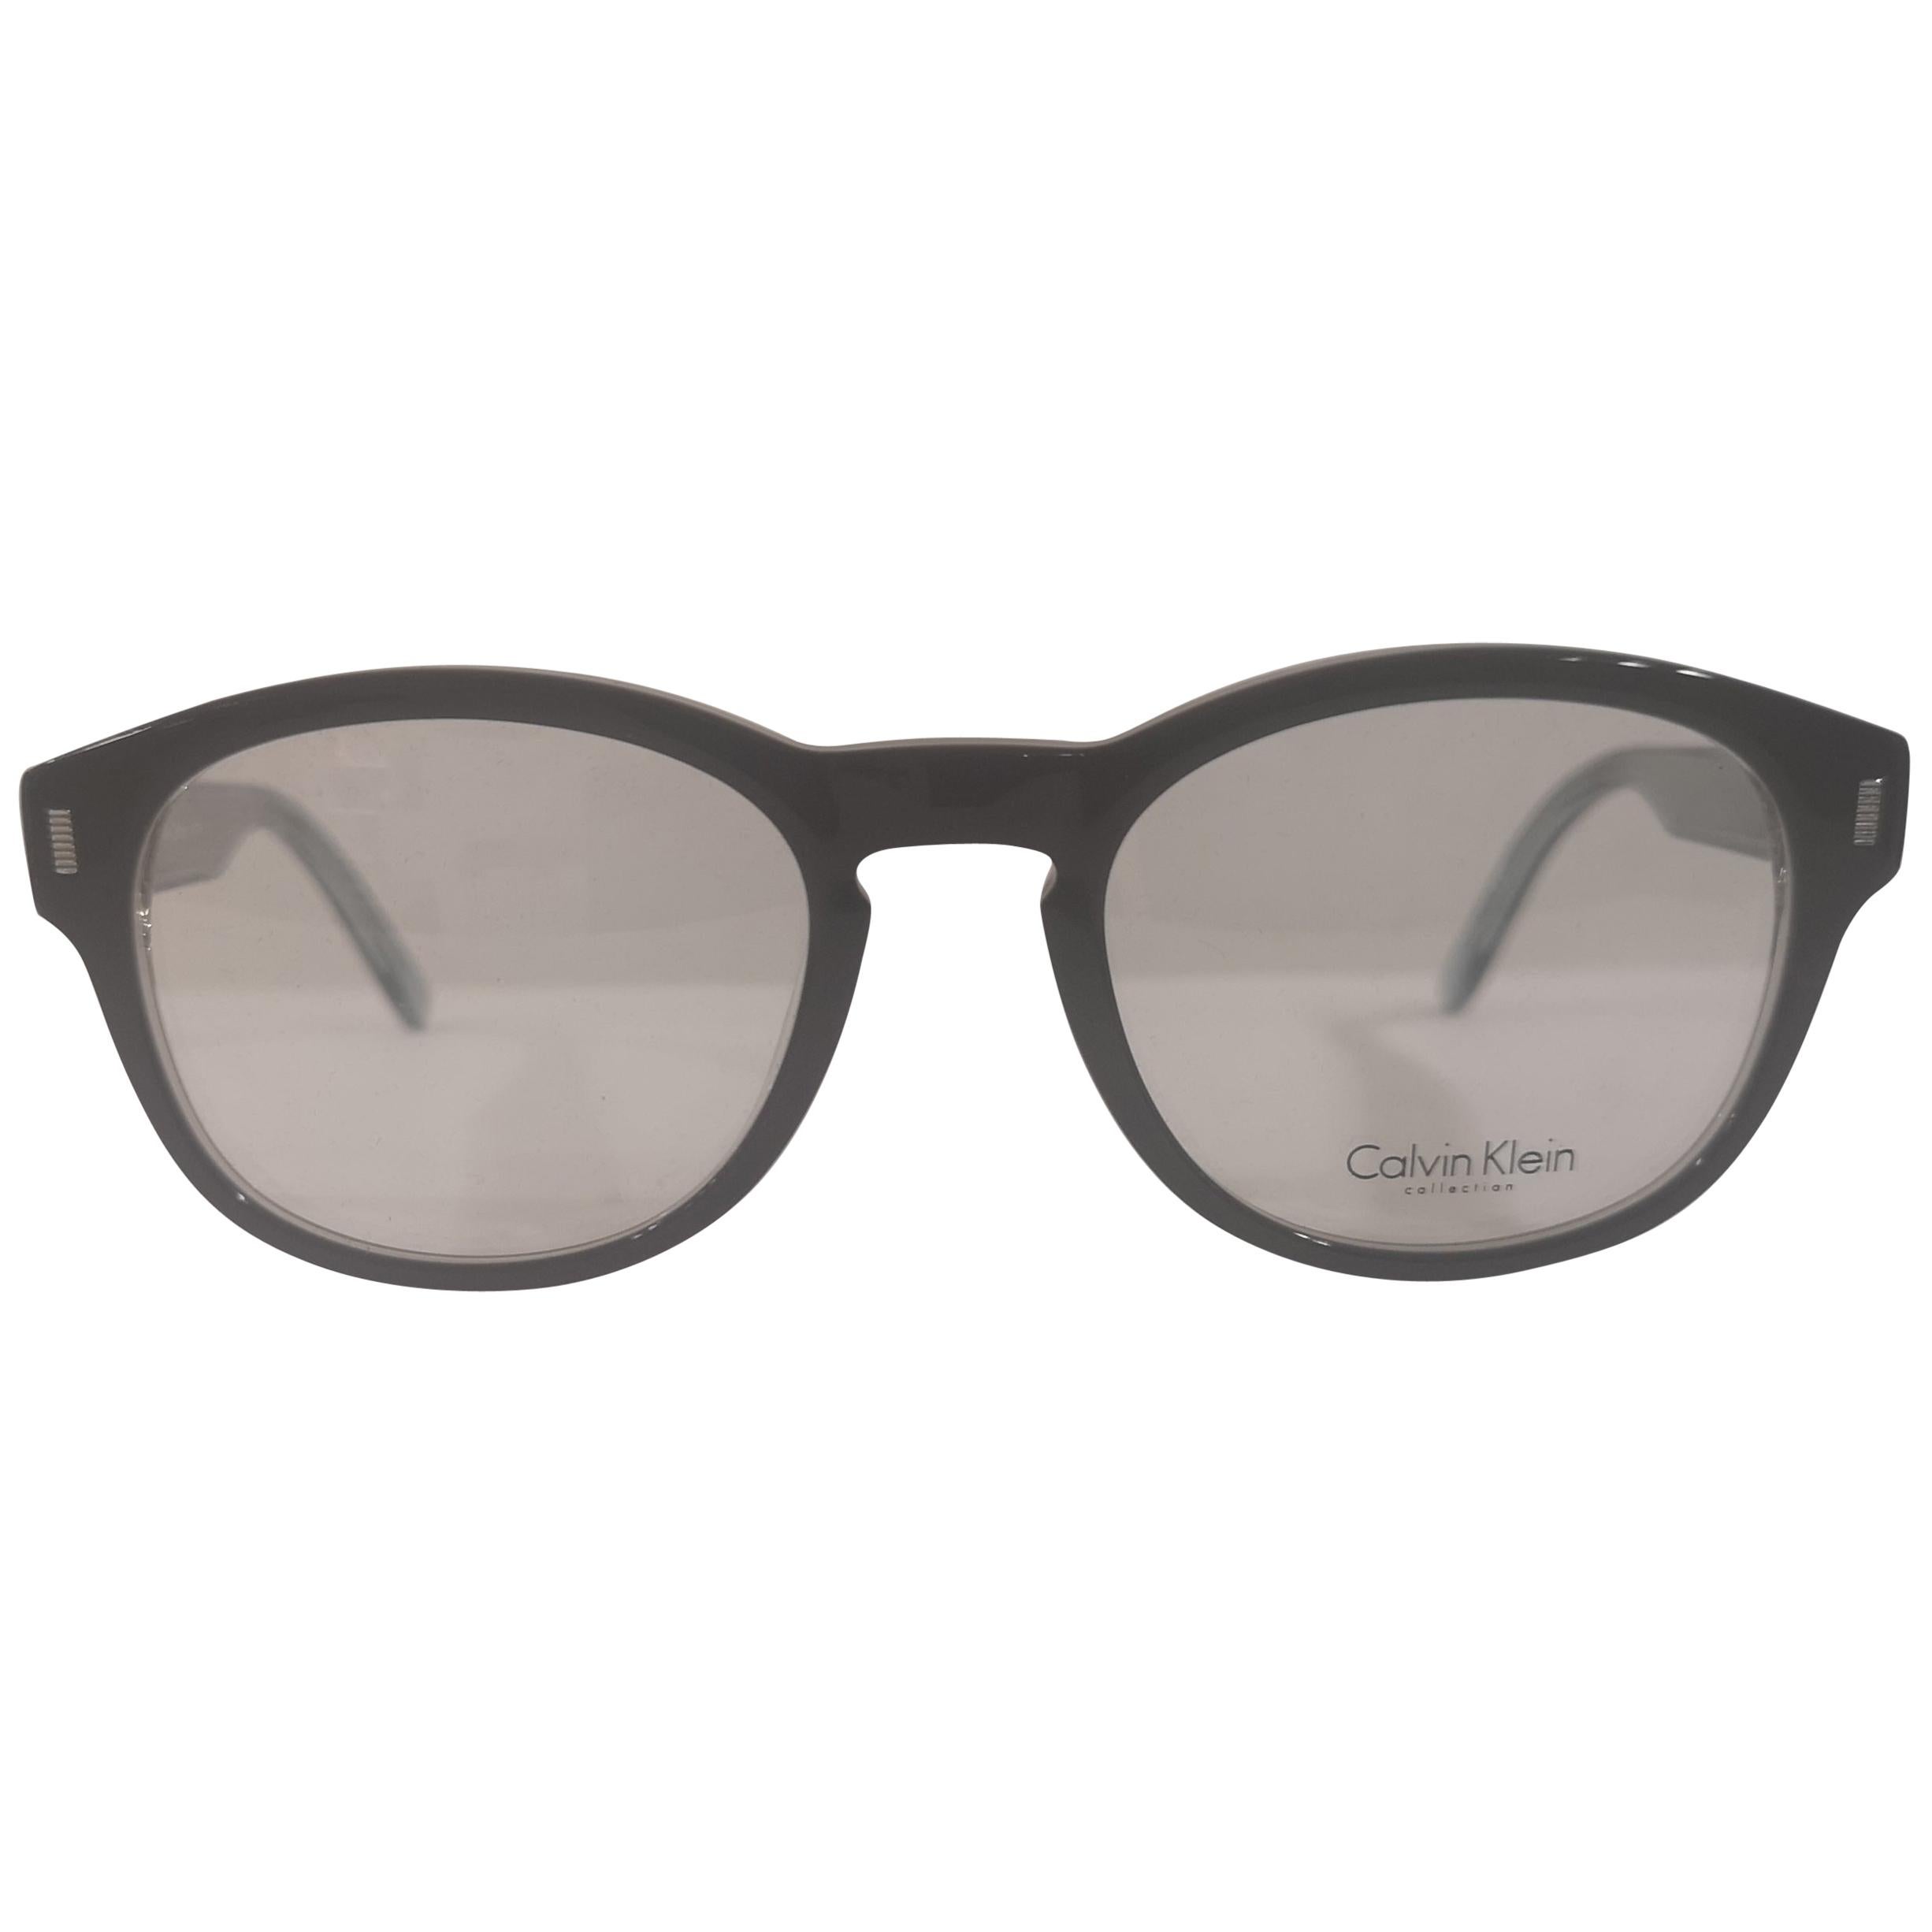 Calvin Klein lunettes/cadrements à monture, neuves avec étiquette en vente